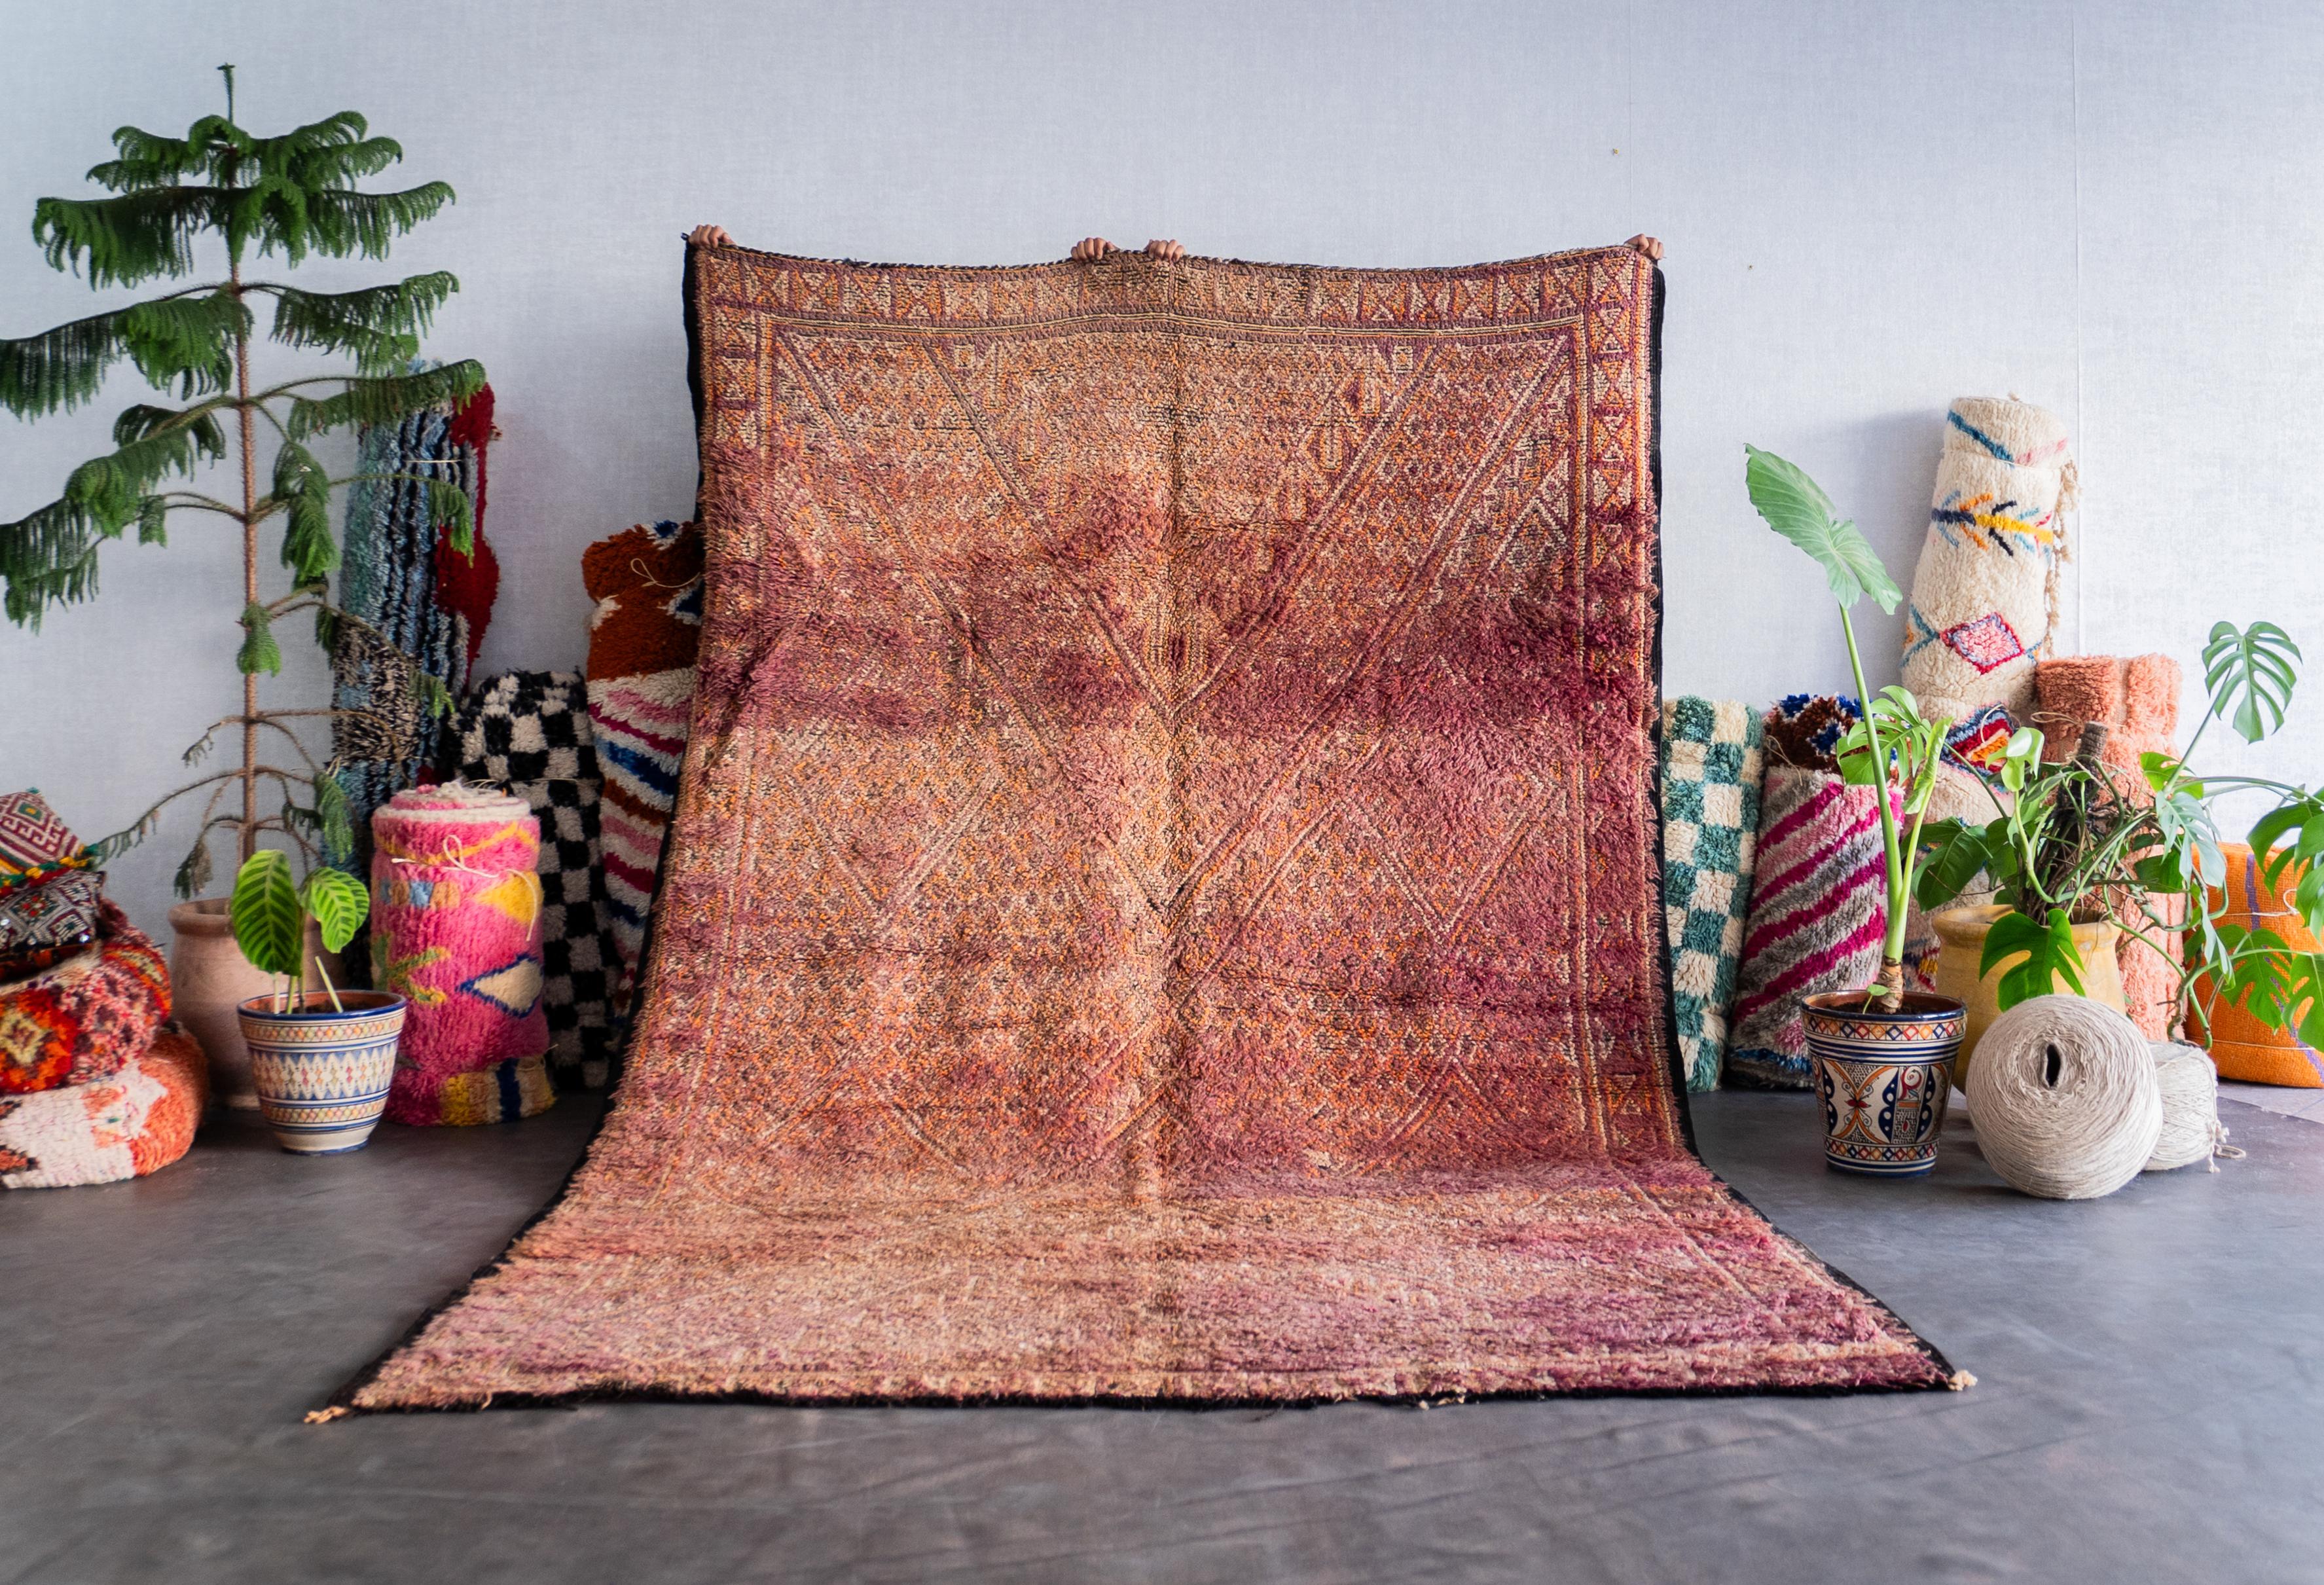 Découvrez le riche héritage tissé dans notre tapis marocain vintage violet. Fabriqué à la main par des artisans qualifiés selon des techniques éprouvées, chaque tapis berbère est un récit unique qui fait écho à la tapisserie culturelle du Maroc.